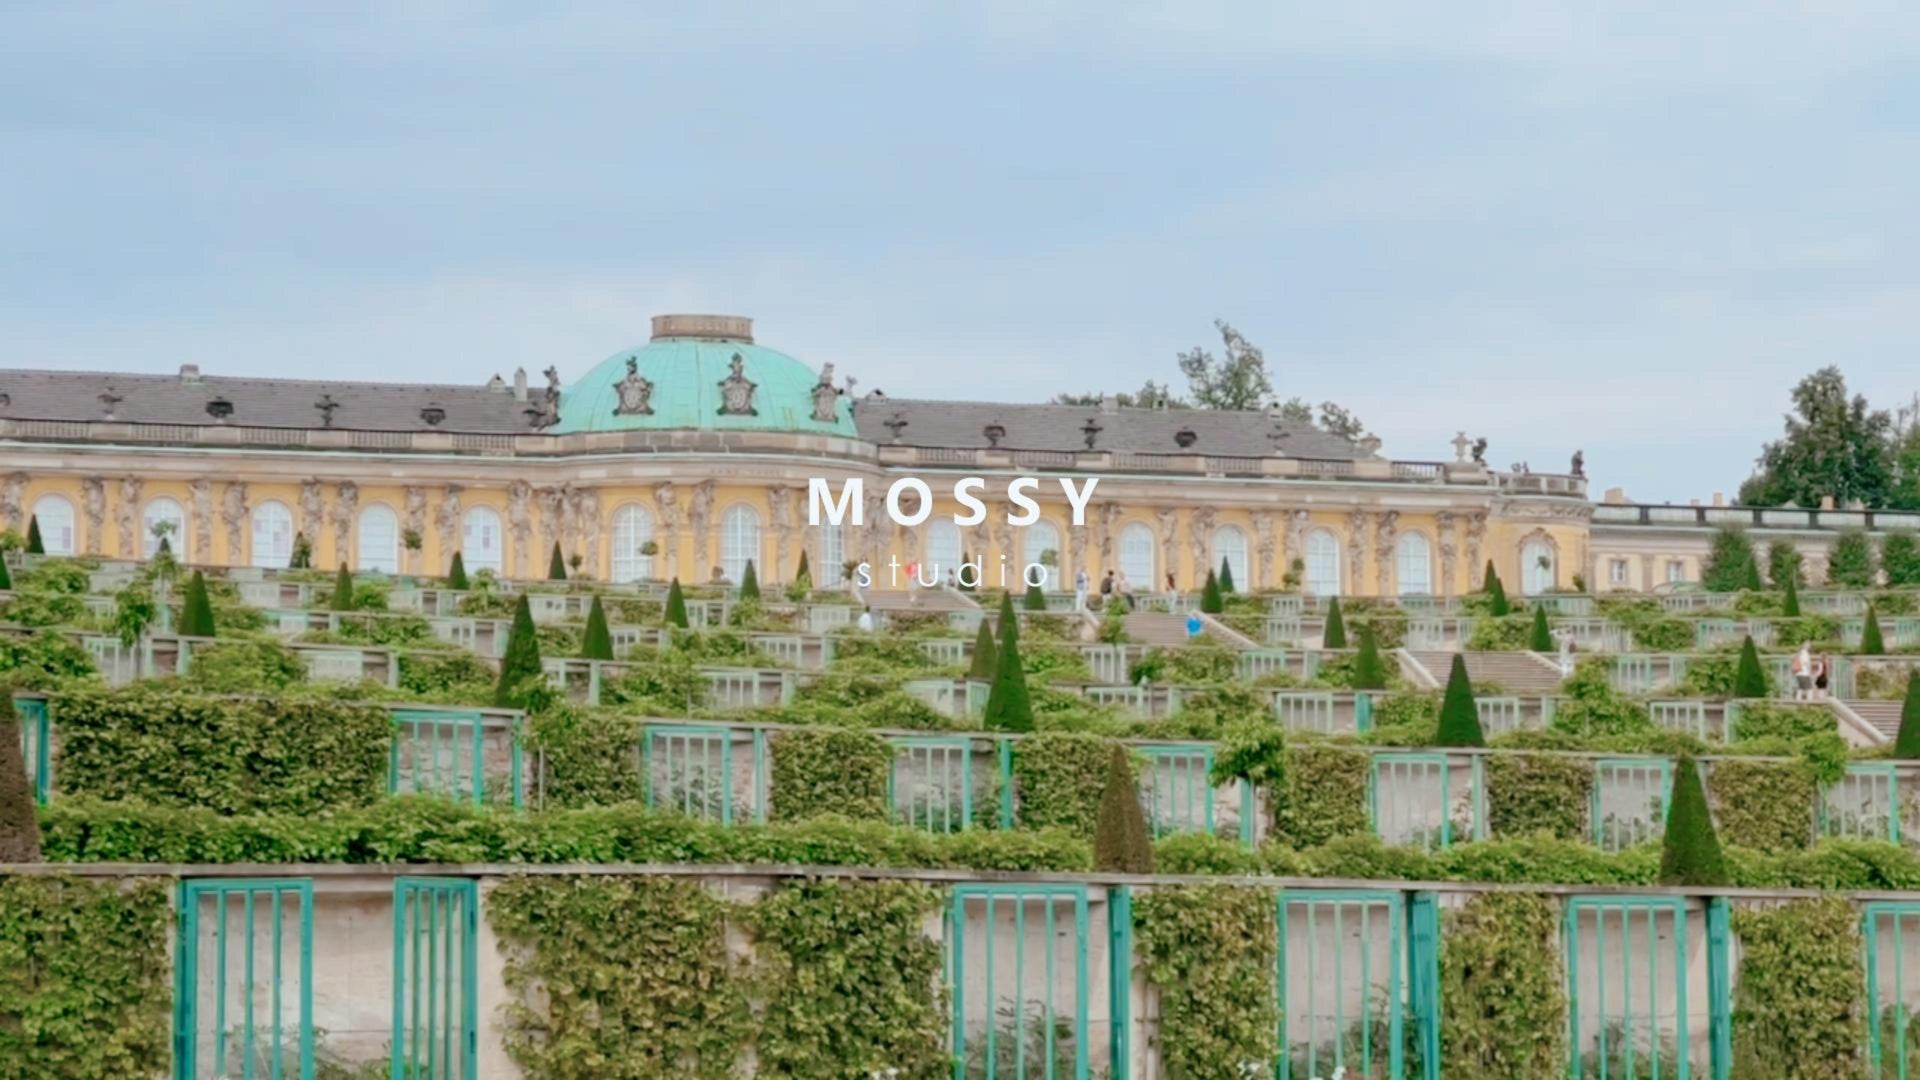 Load video: mossy studio be adventurous leather handbag minimalist elegant